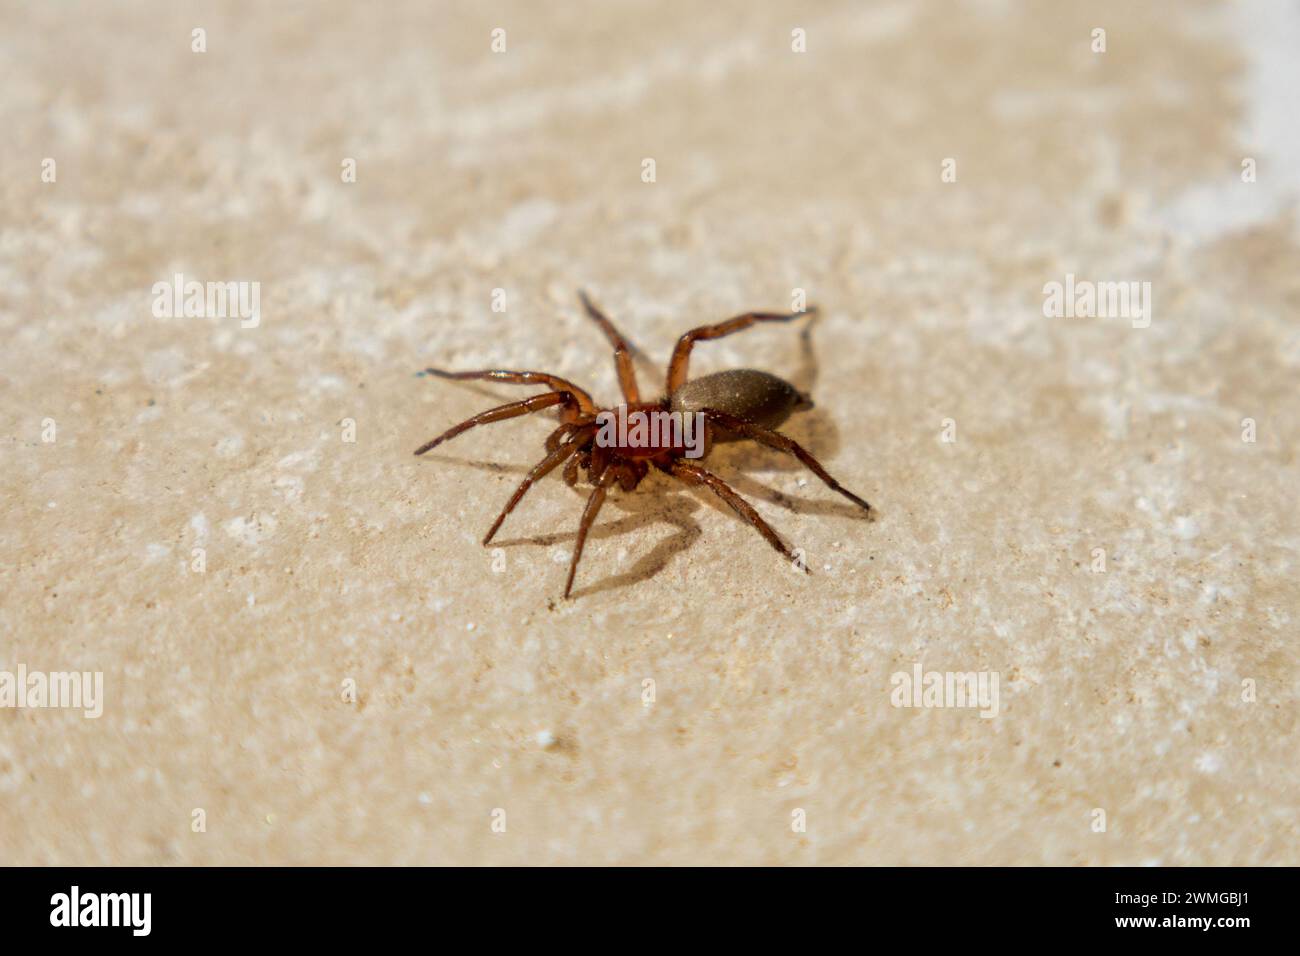 Zelotinae, Ground Spider Stock Photo